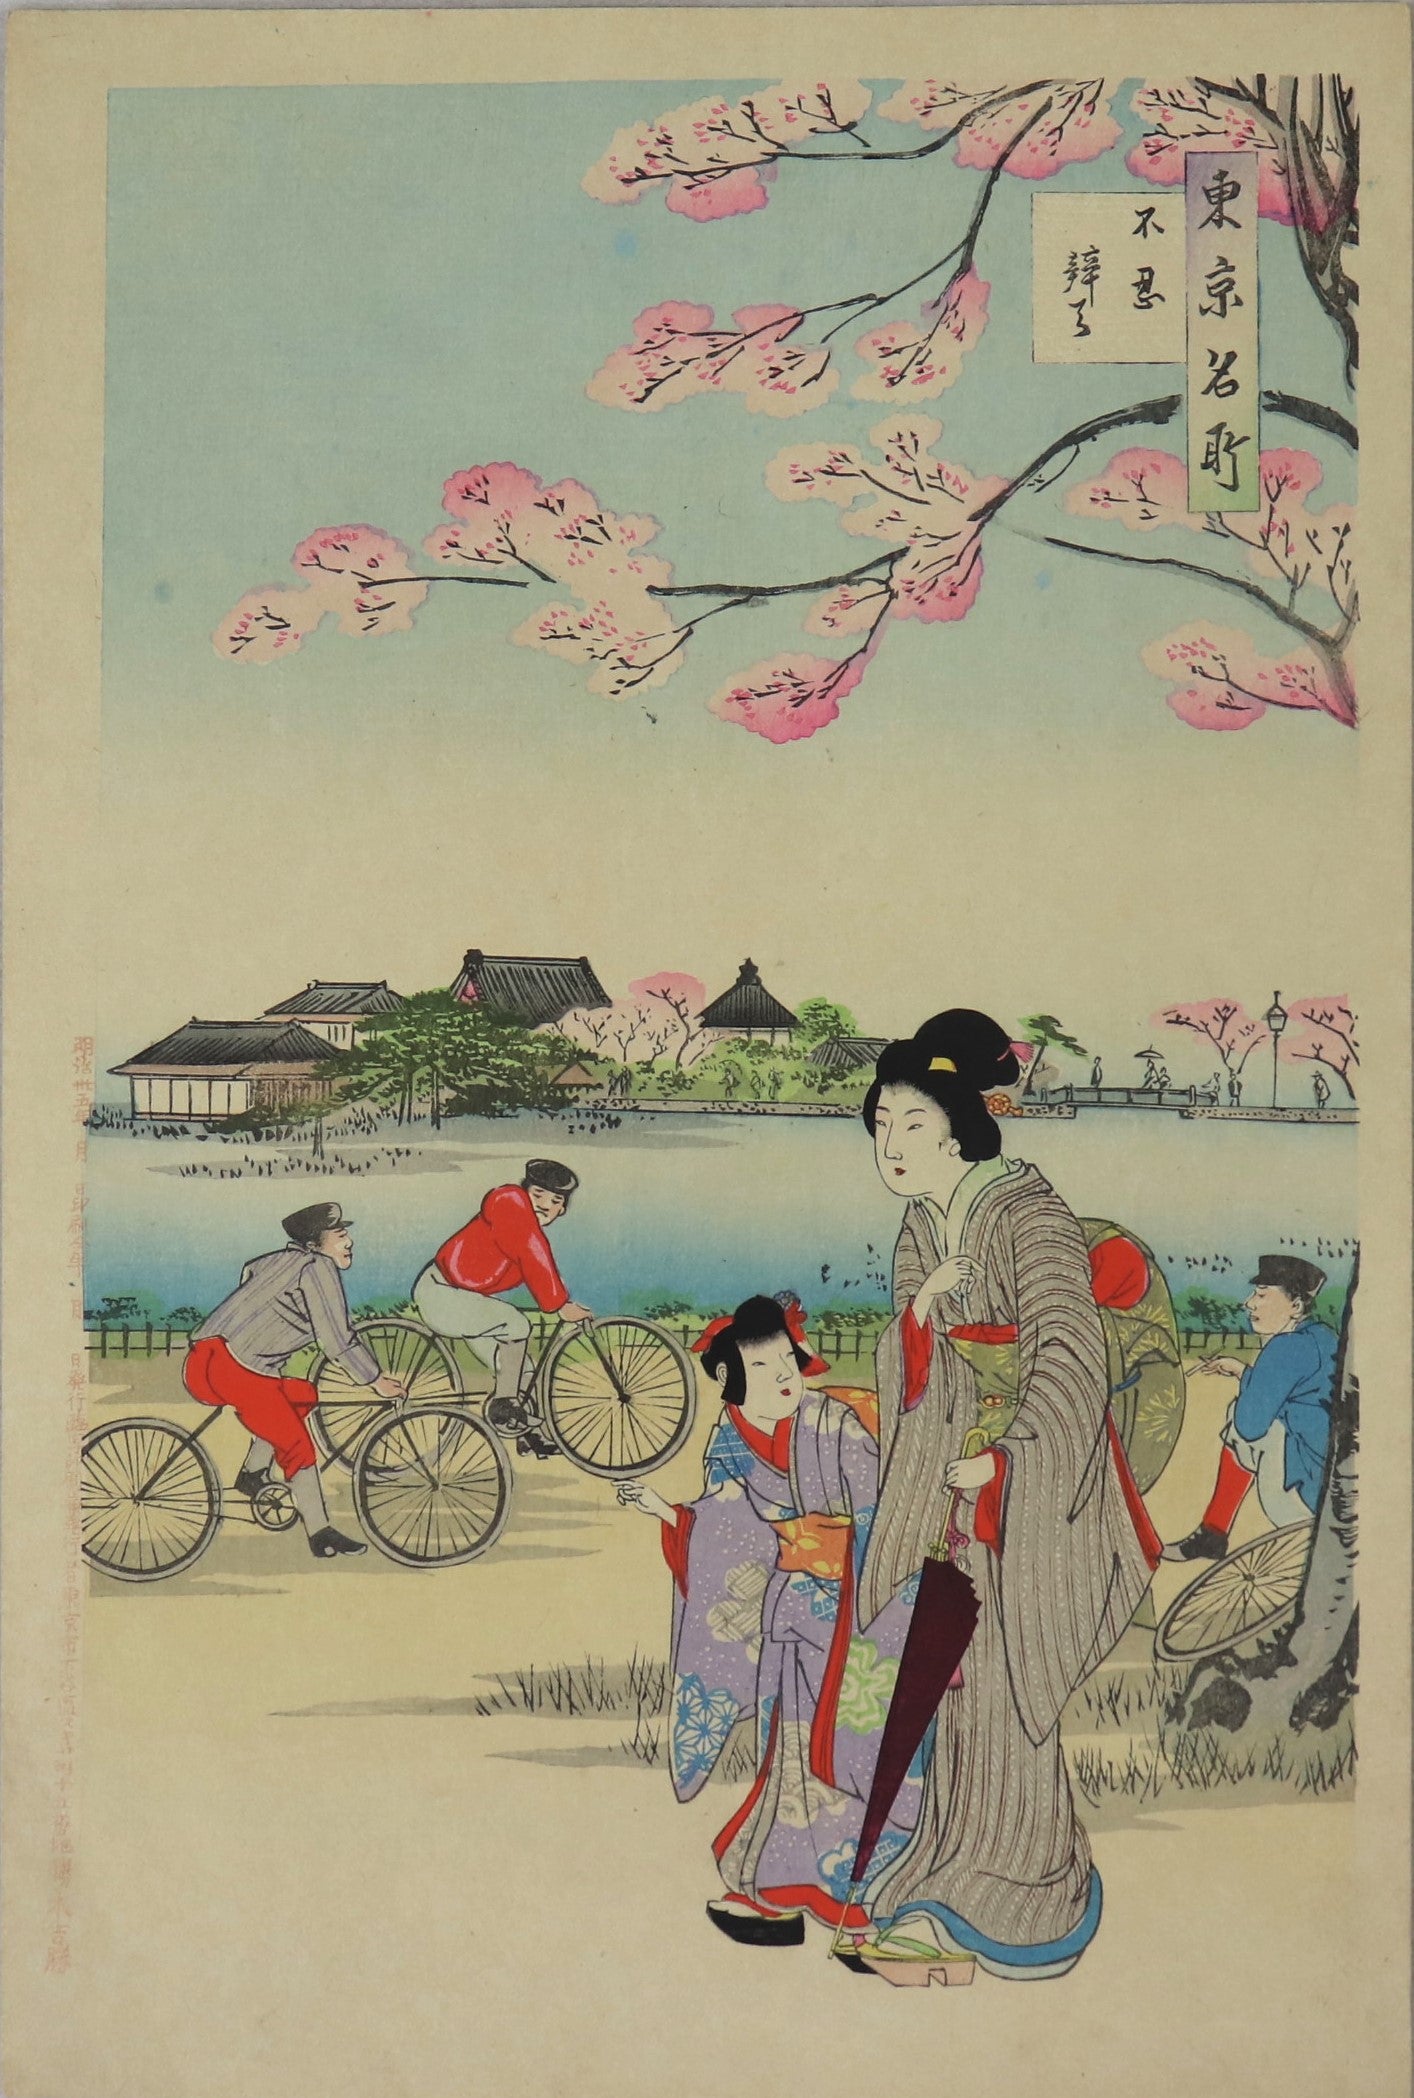 Riding Bicycles at Shinobazu Pond from the series " Famous Views of Tokyo " by Chikanobu / Tour de vélo autour de l étang de Shinobazu de la série " Célèbres Vues de Tokyo " par Chikanobu ( 1902)